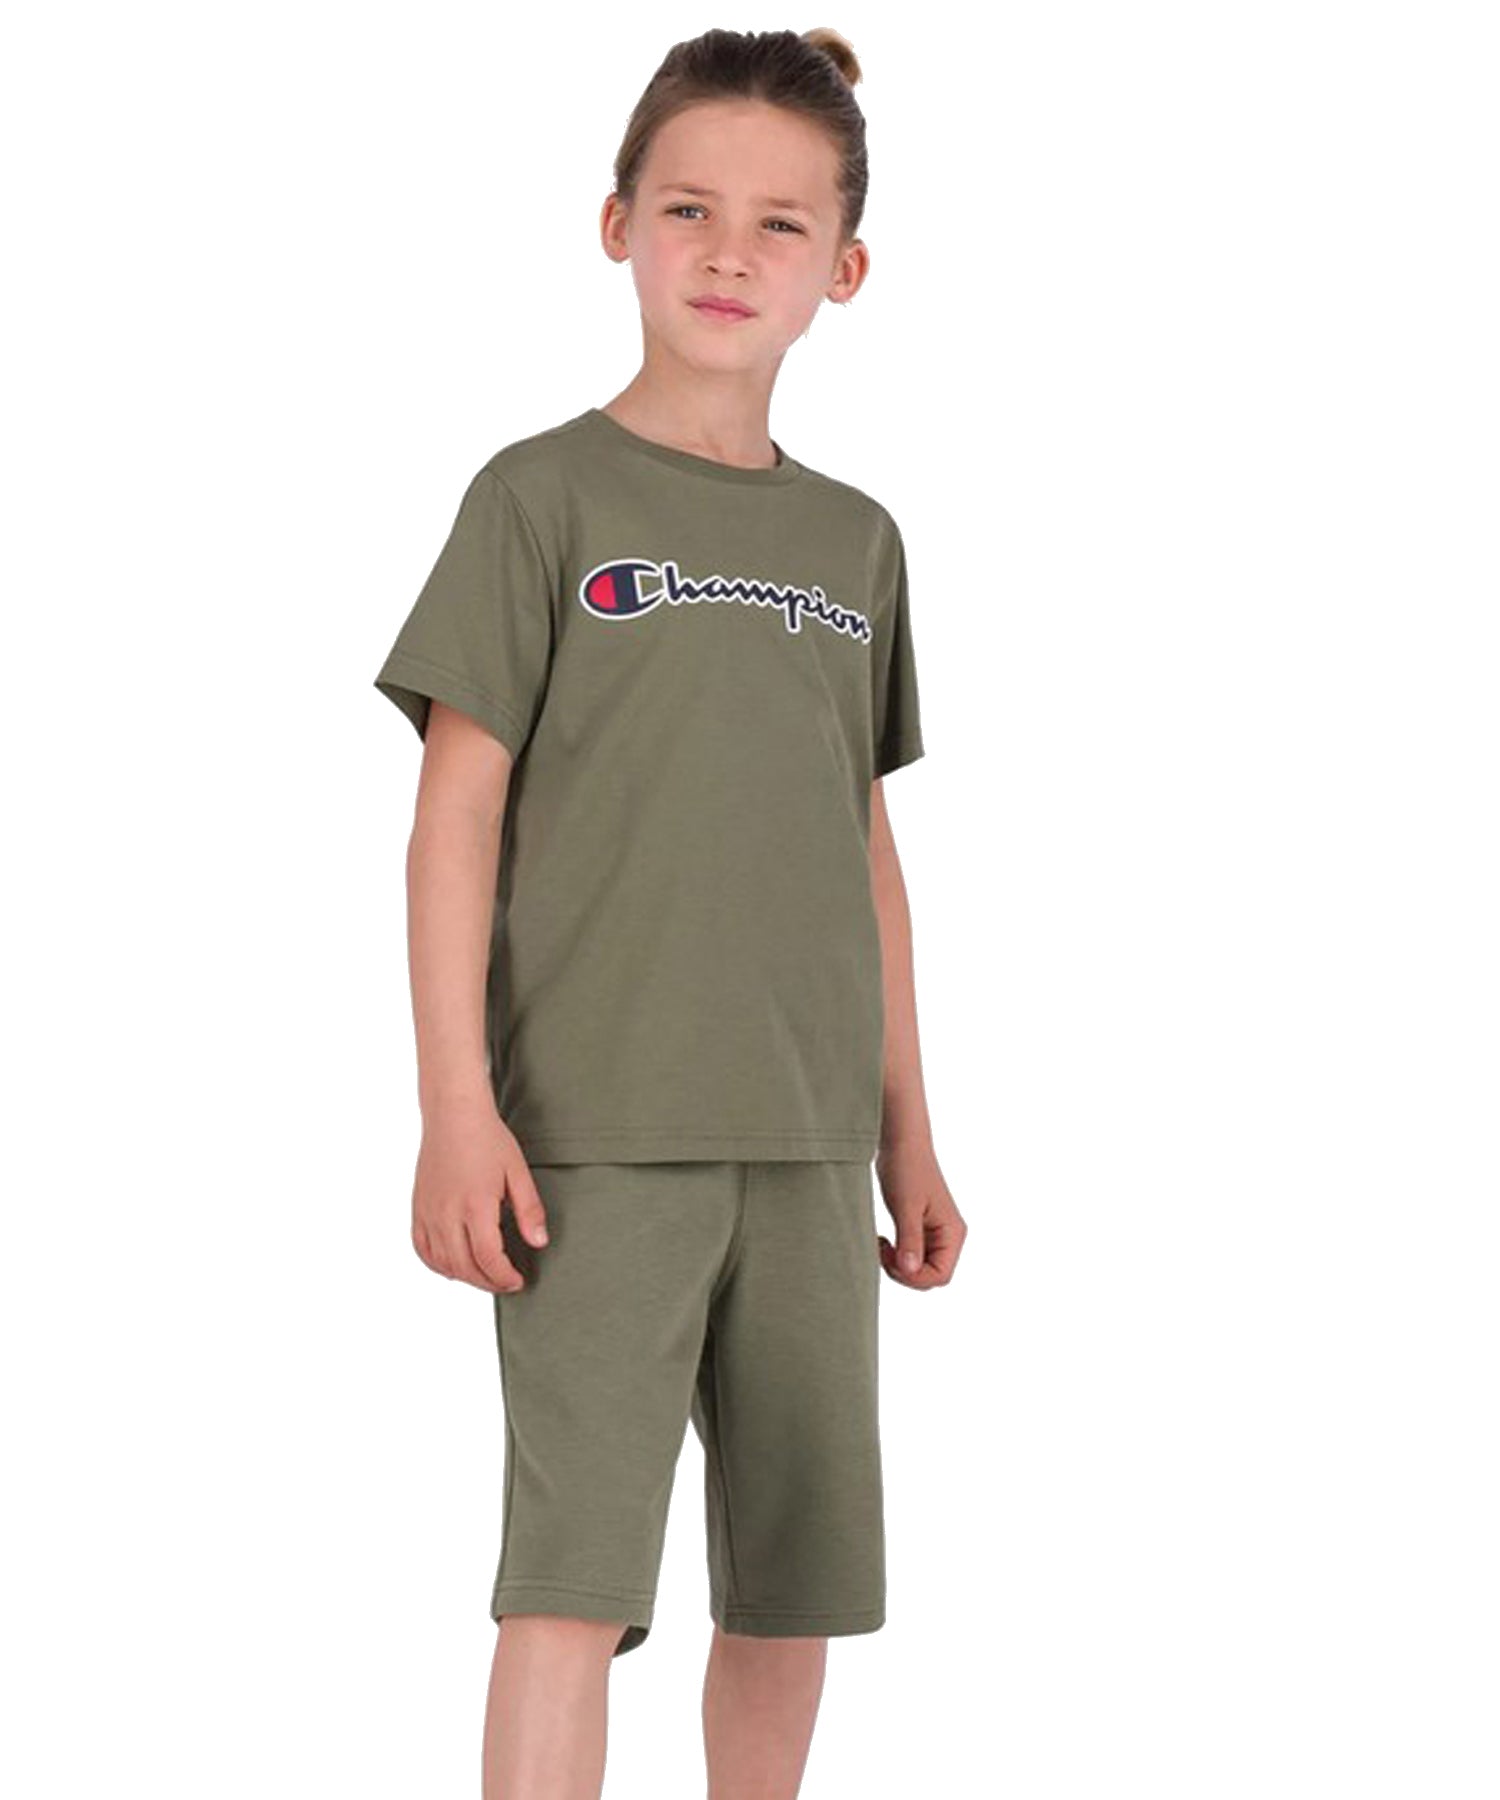 Camiseta para niños / as Champion con un corte clásico-color verde y logo Champion en el pecho y en el brazo.